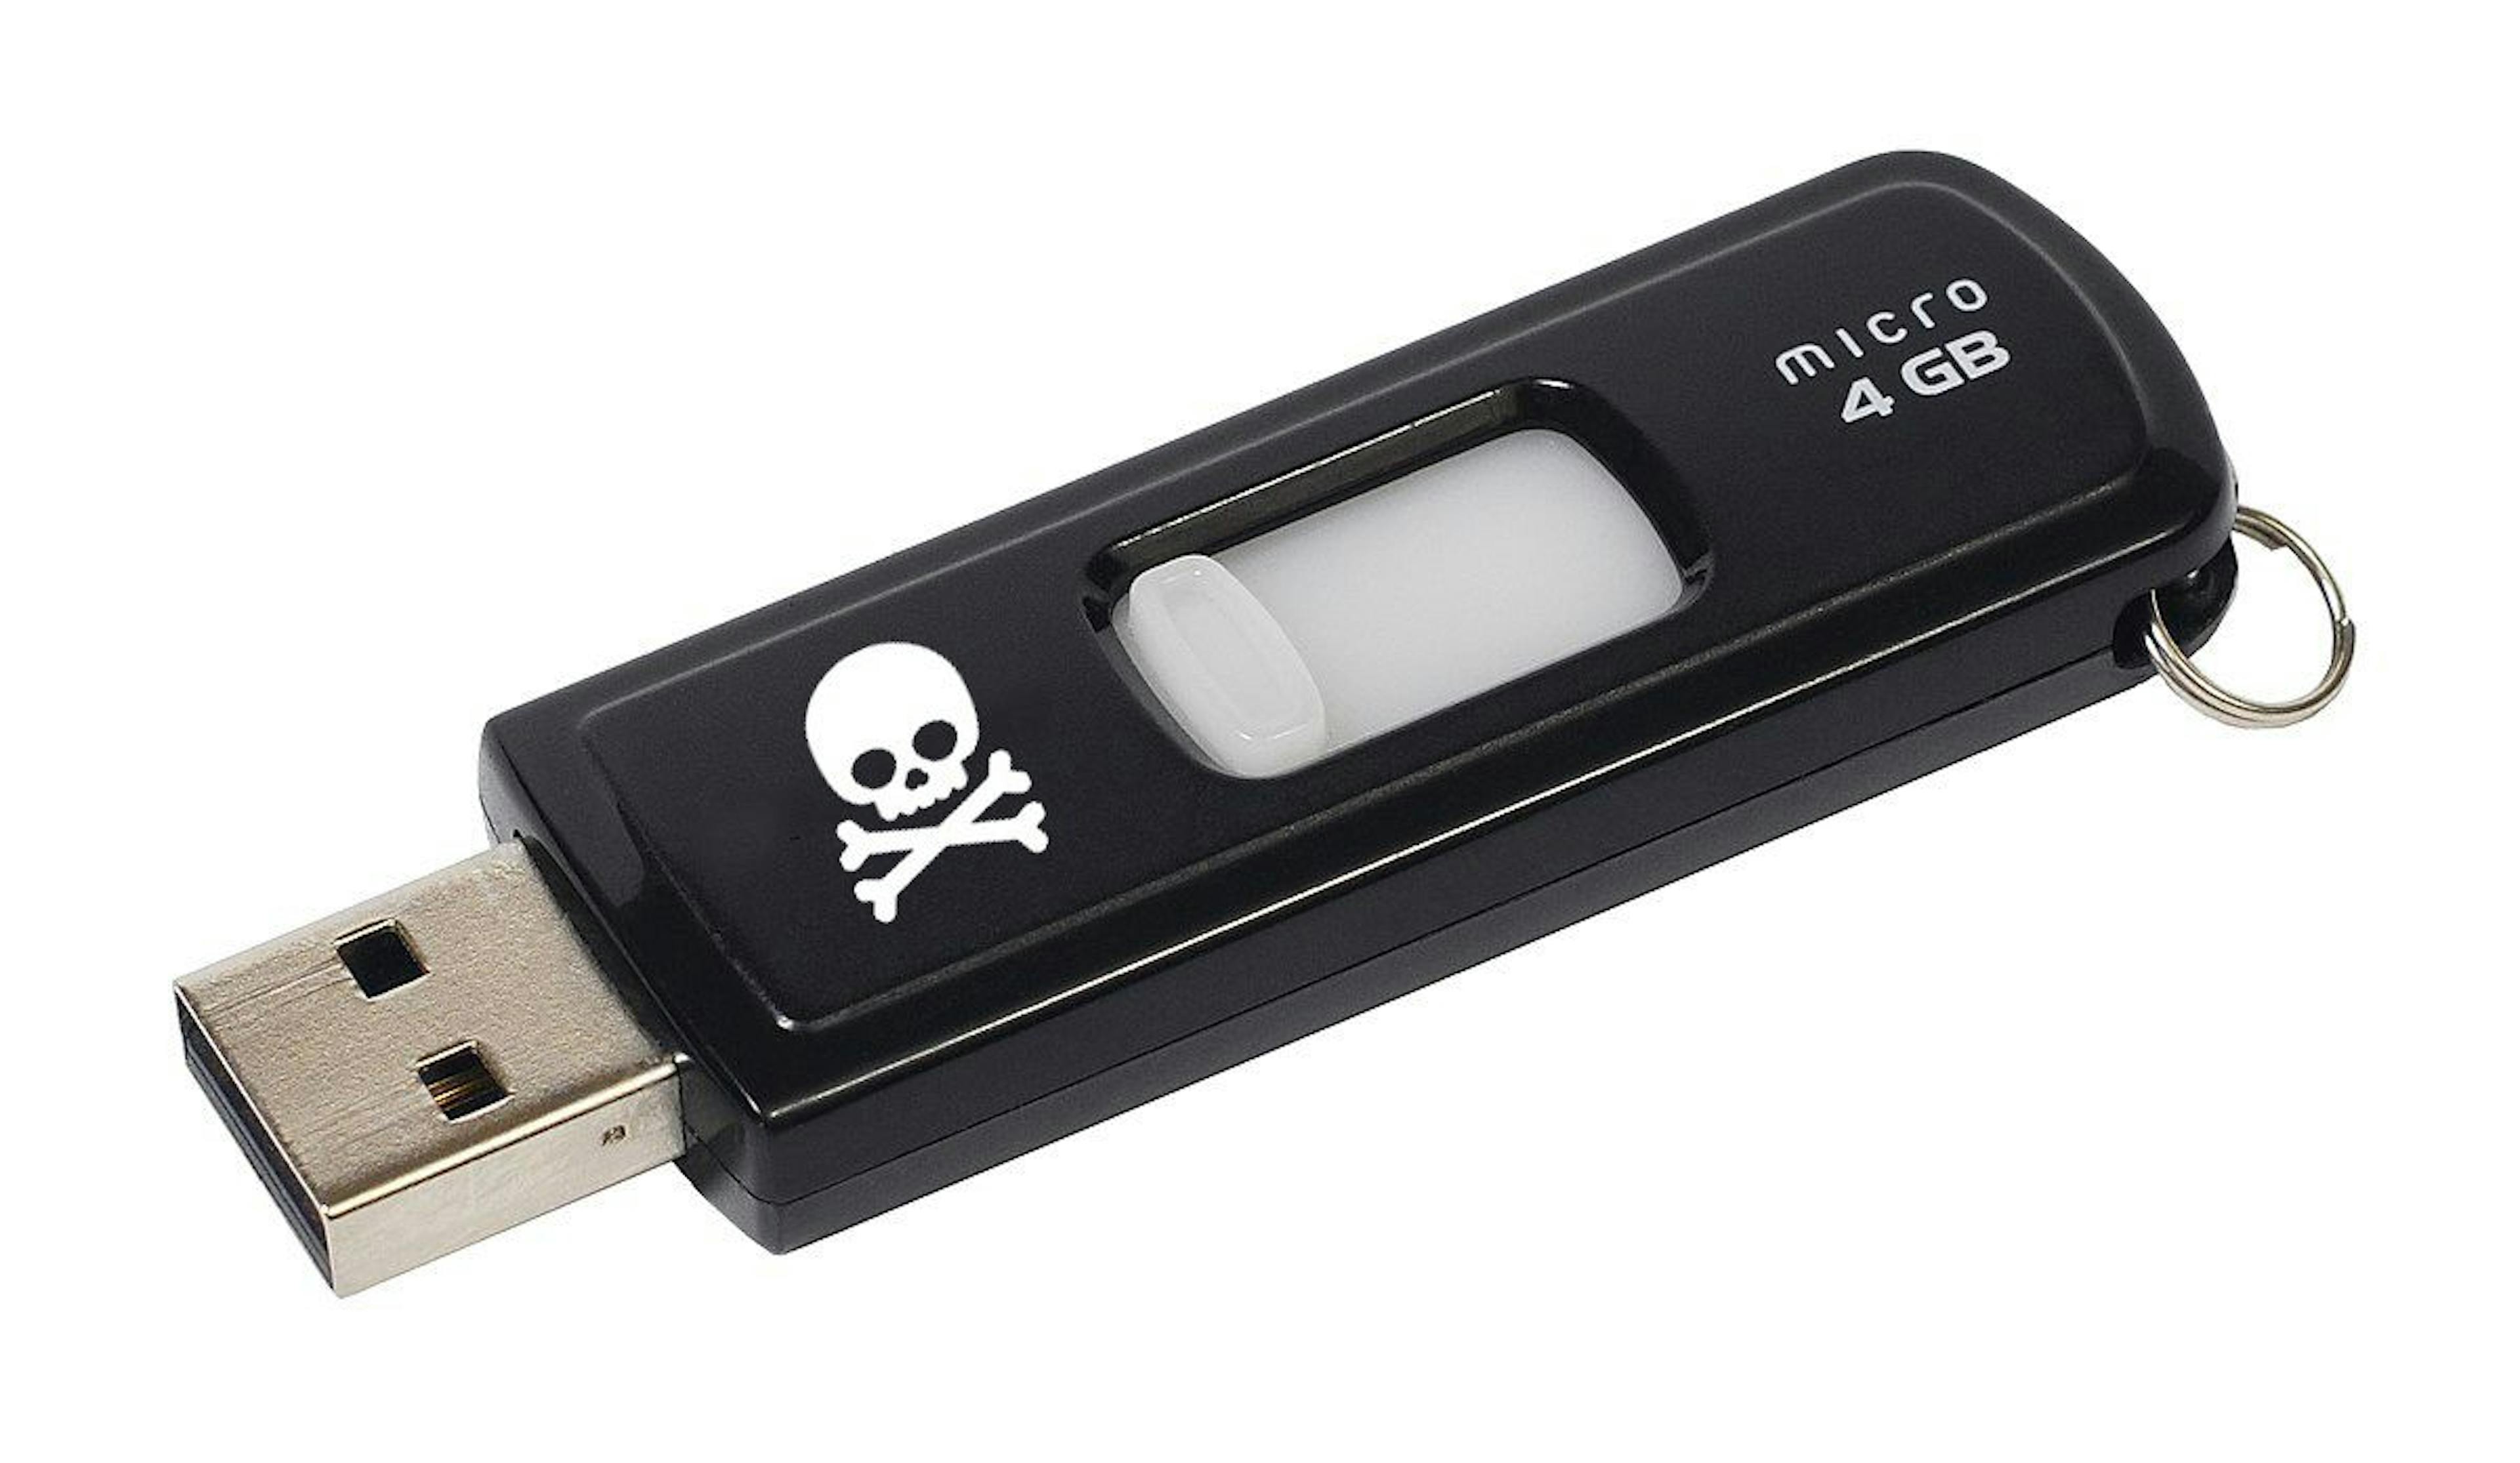 featured image - Cómo hacer un dispositivo USB malicioso y divertirse sin causar daño